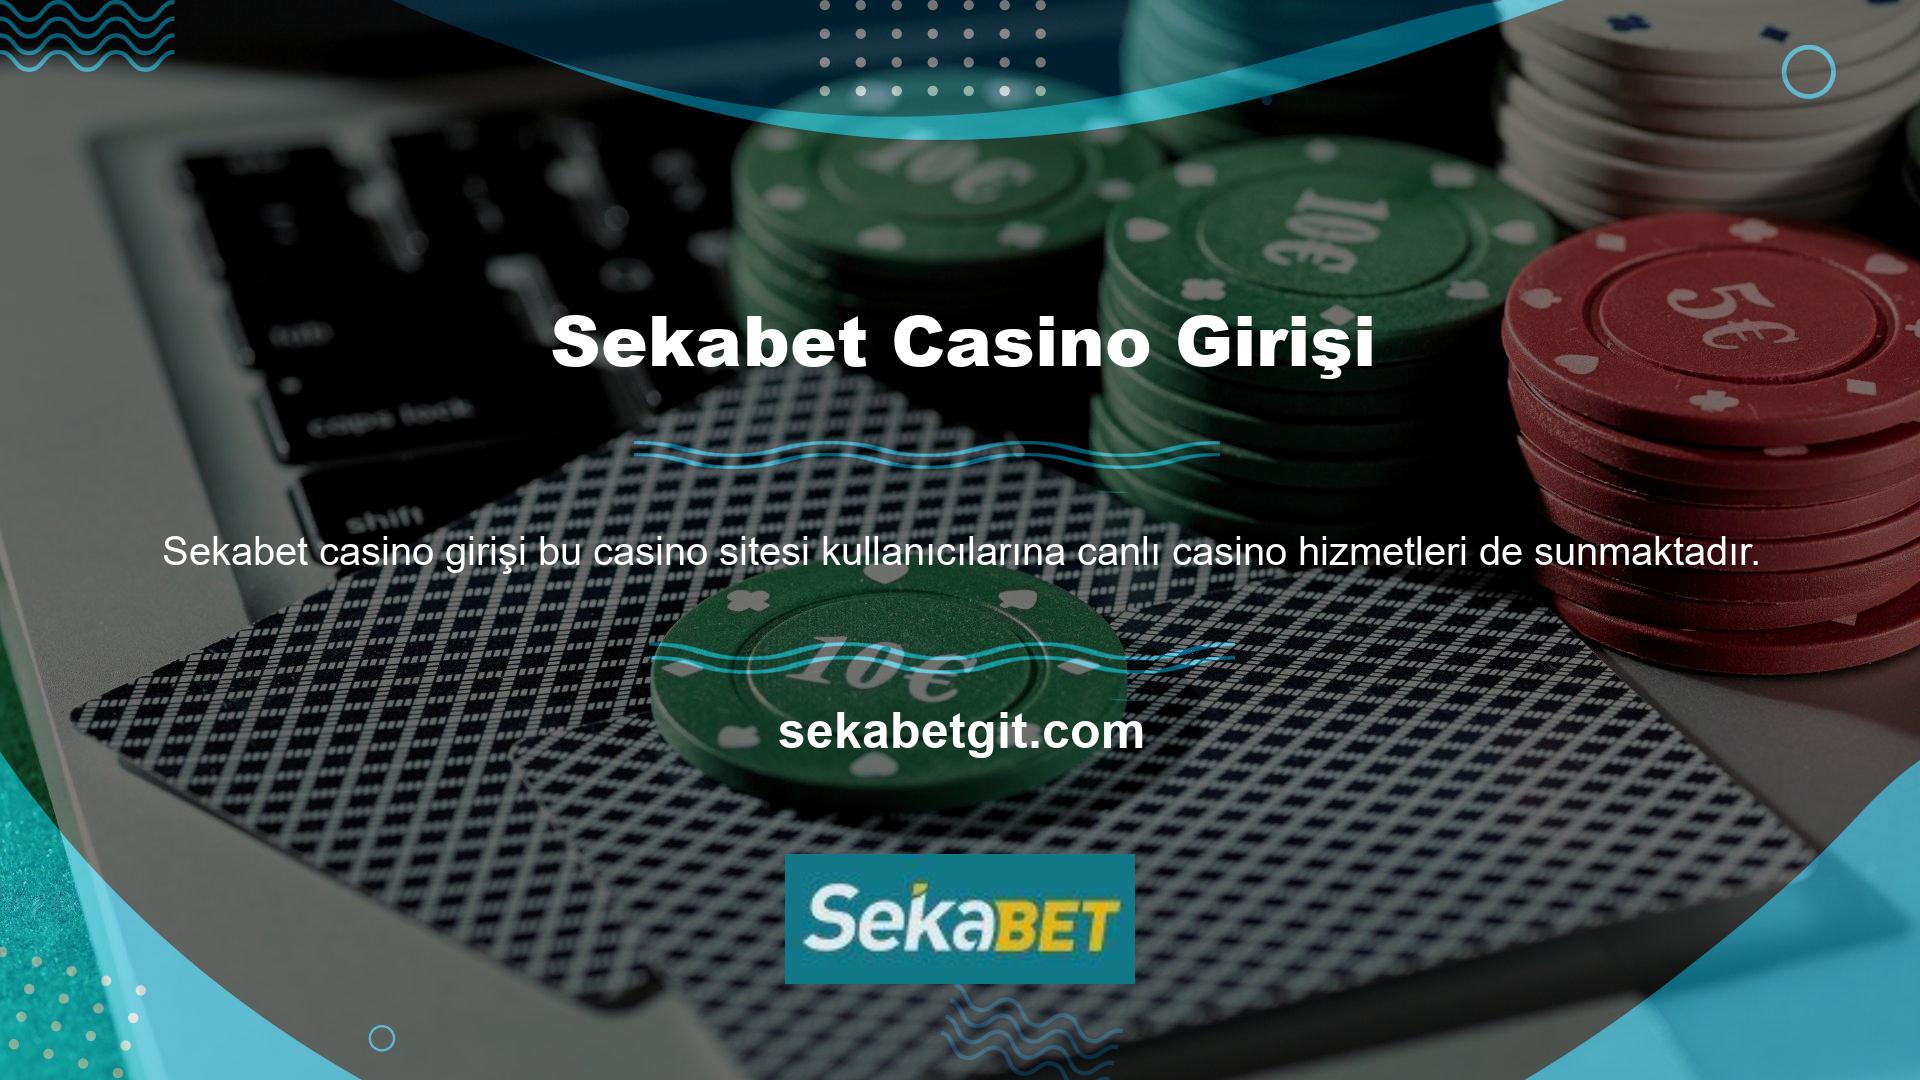 Casinoda masa oyunları ve canlı poker oynayabilirsiniz